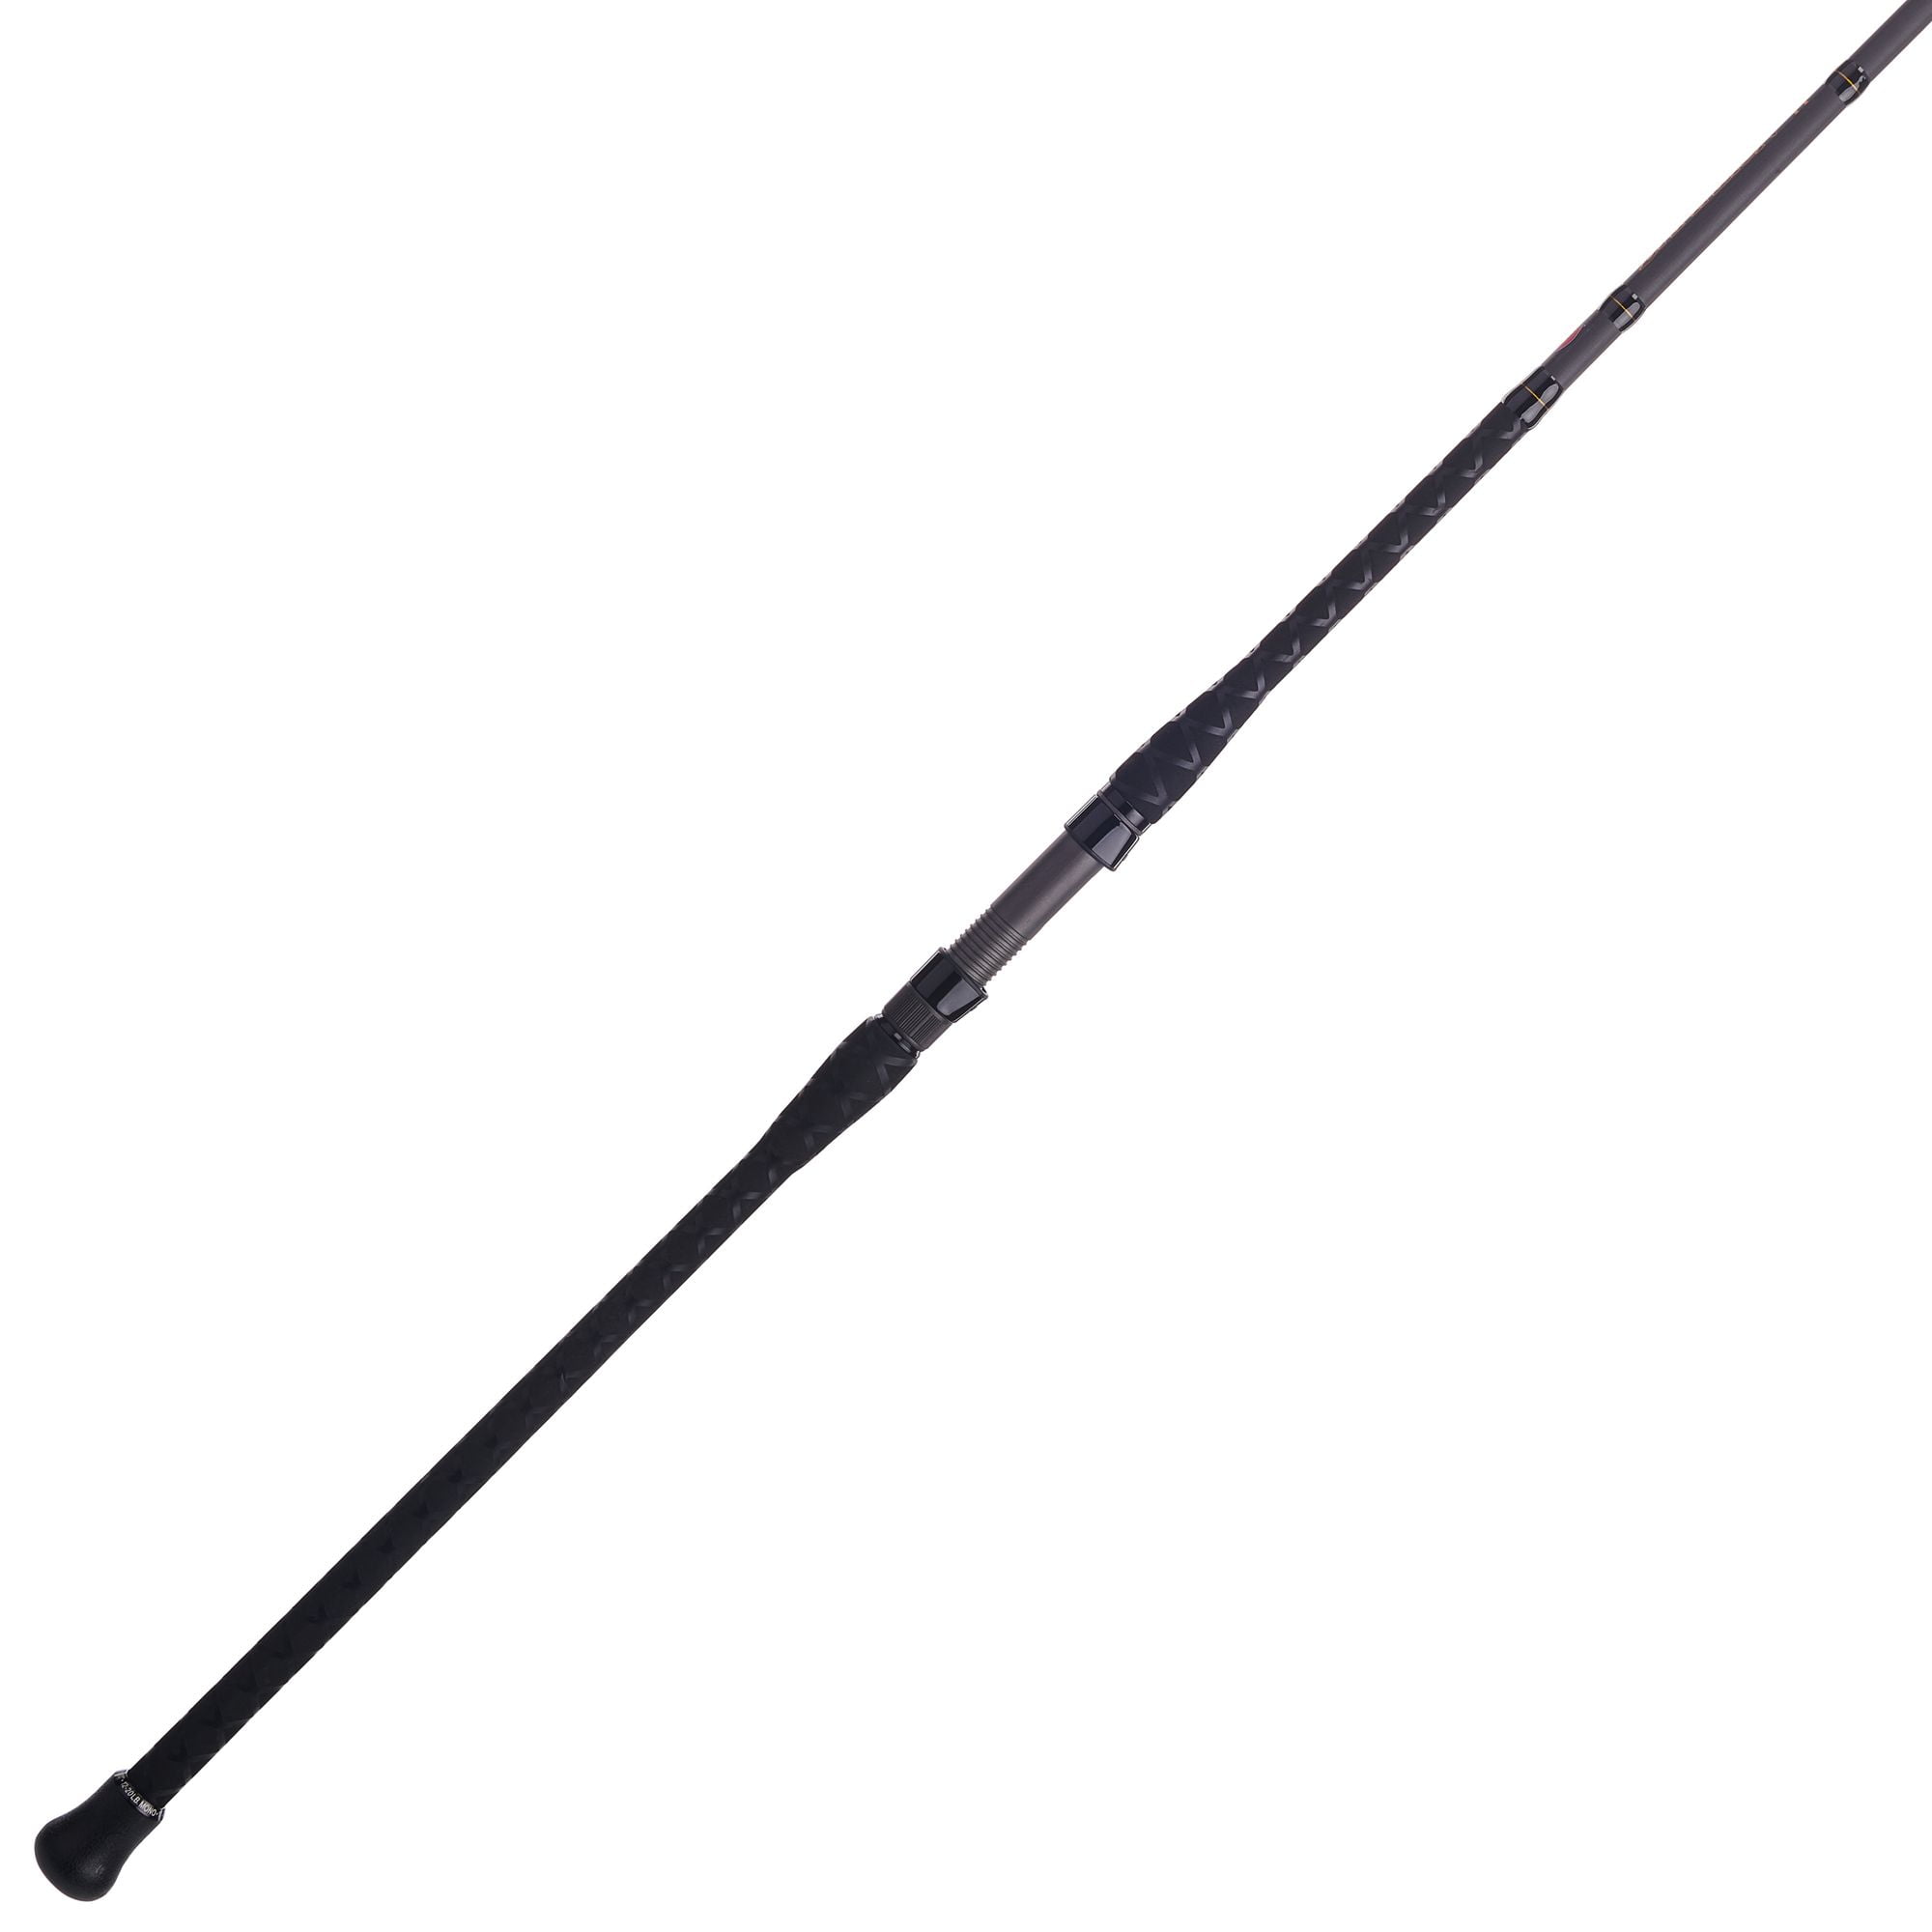 Penn 14ft Fishing Rod - 1541070 for sale online